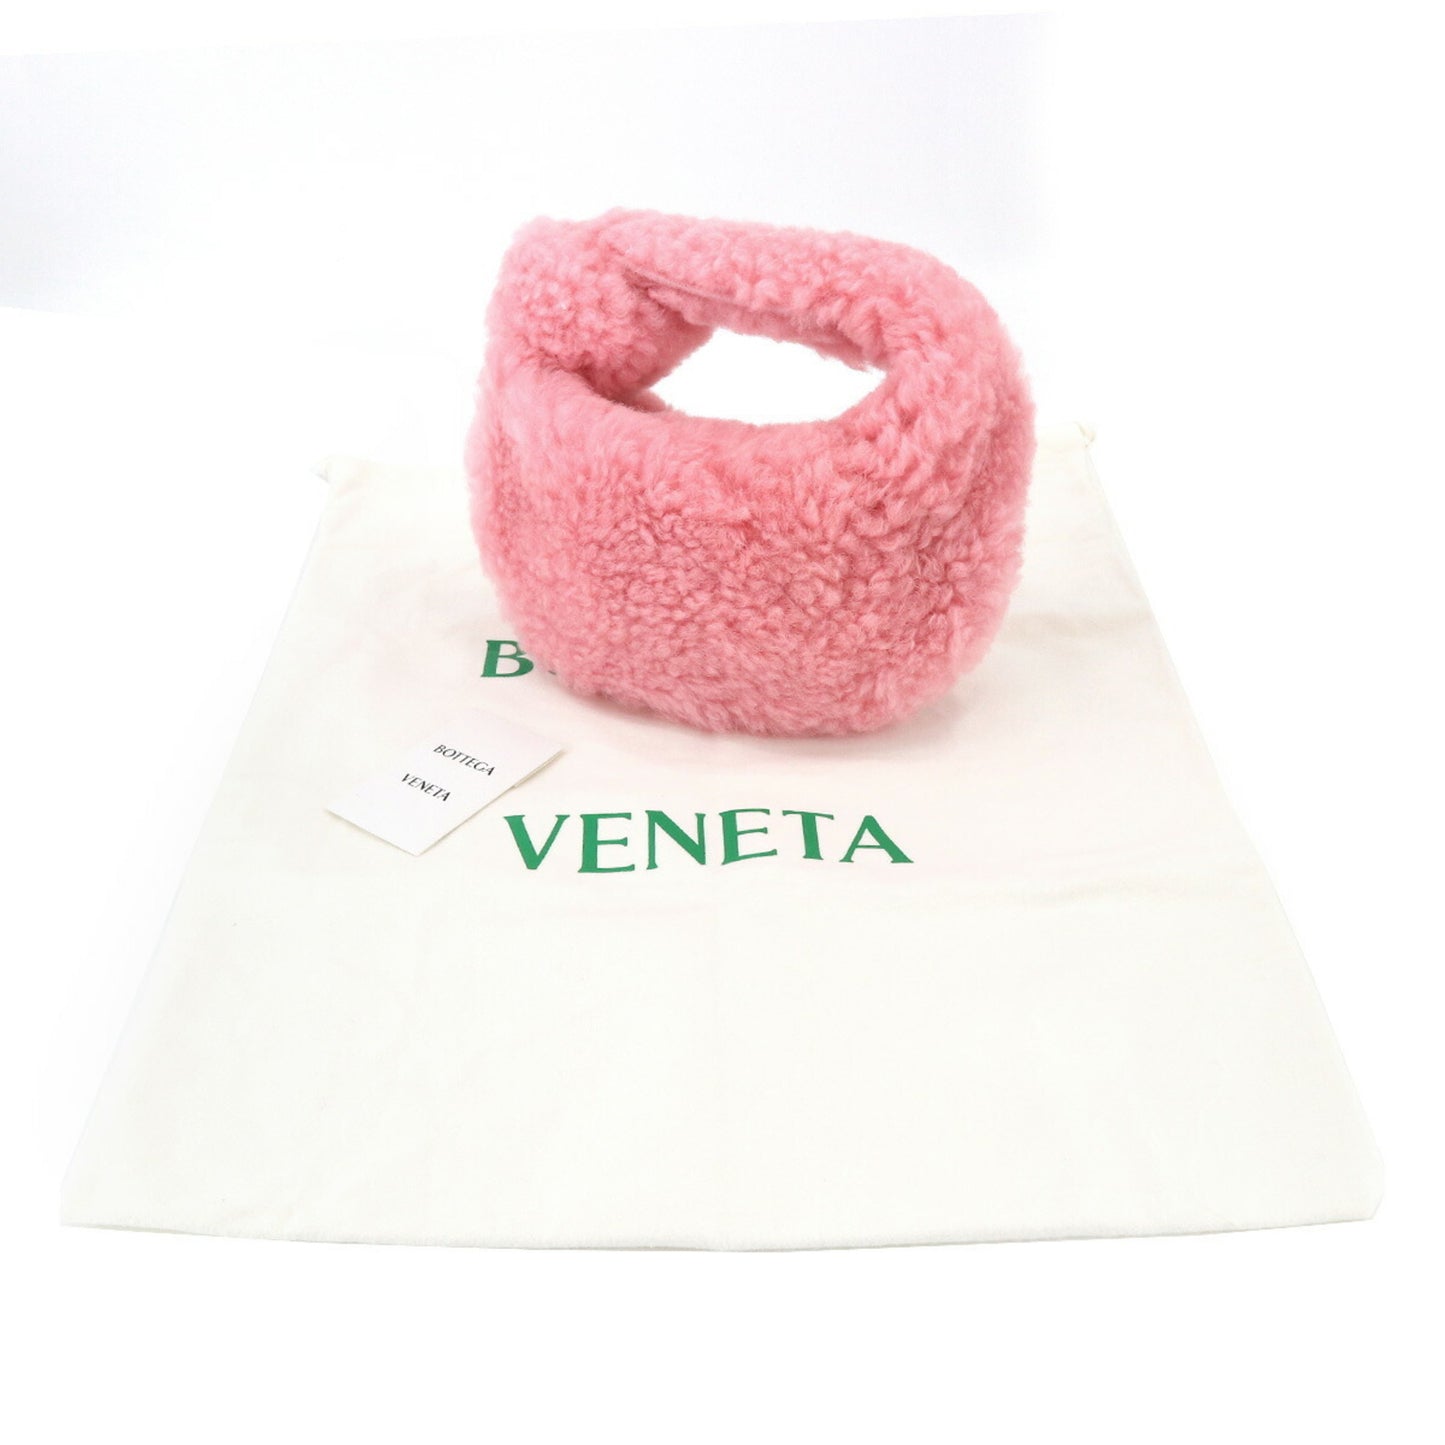 Bottega Veneta Women's Luxury Bottega Veneta Jodie Handbag in Pink